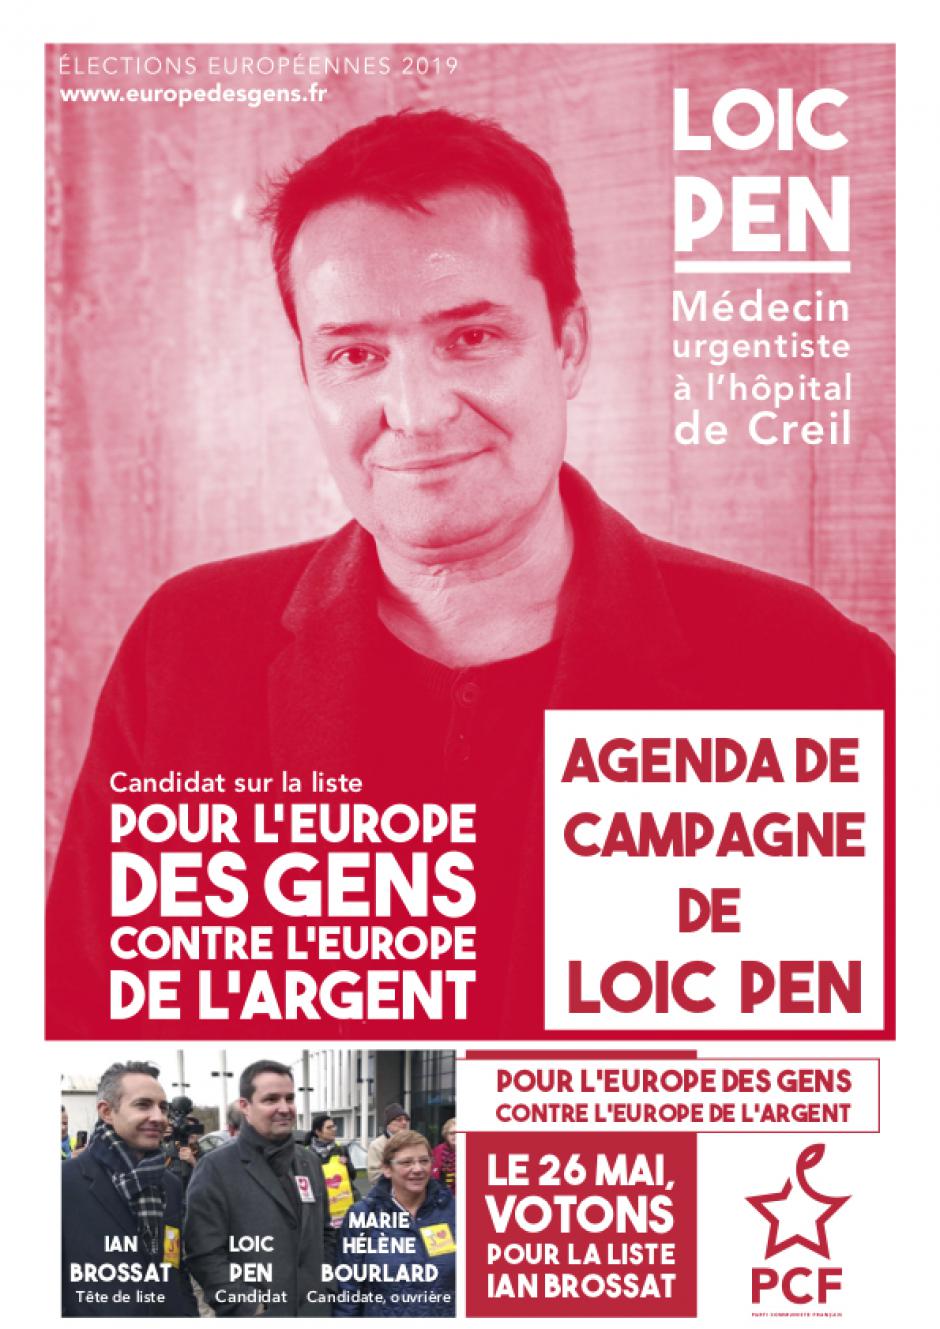 Européennes 2019 : agenda de campagne du candidat Loïc Pen #EuropeDesGens